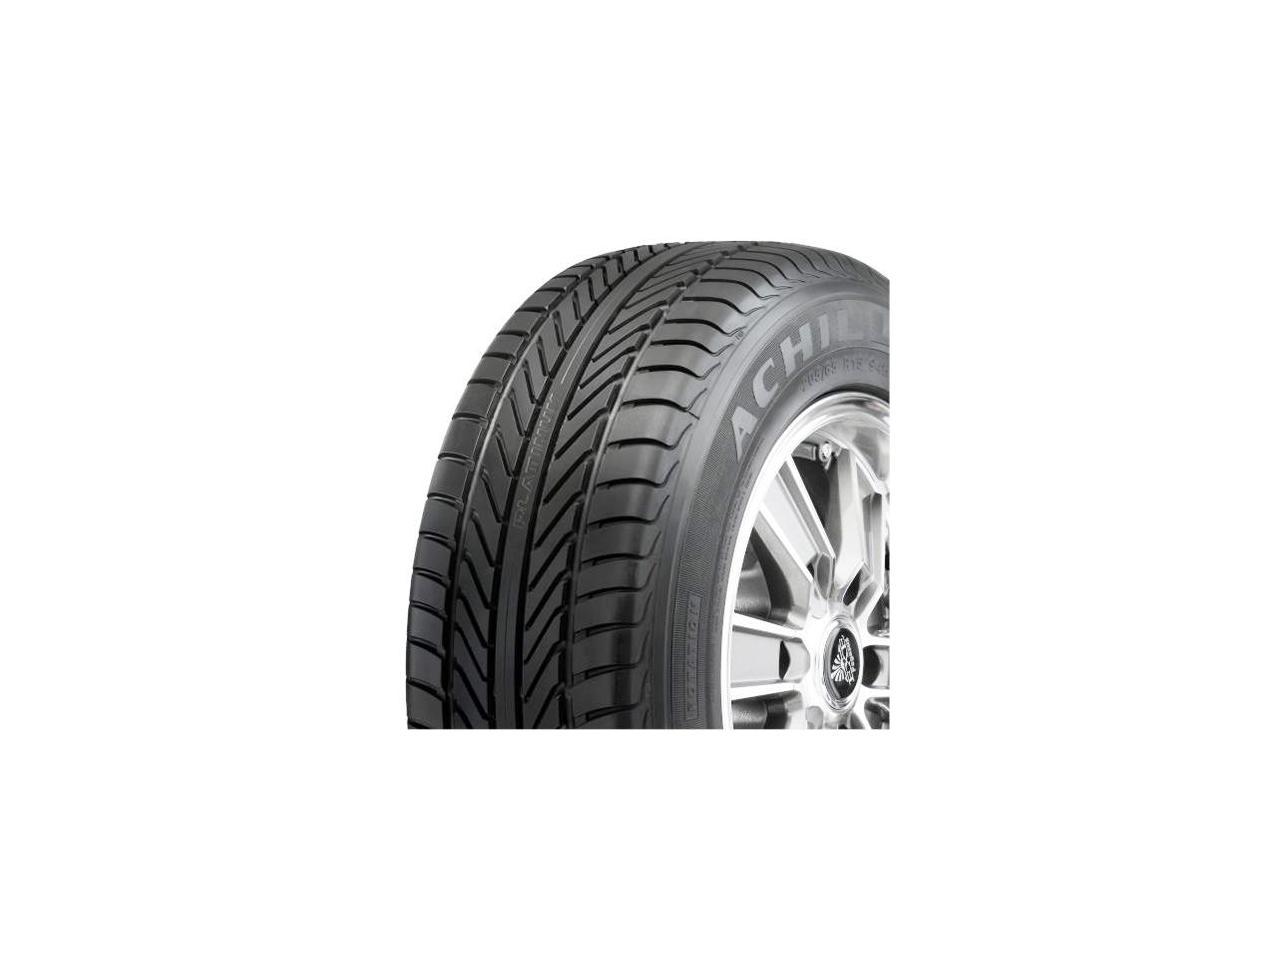 4 Tires Achilles Platinum 195/65R14 89H Performance